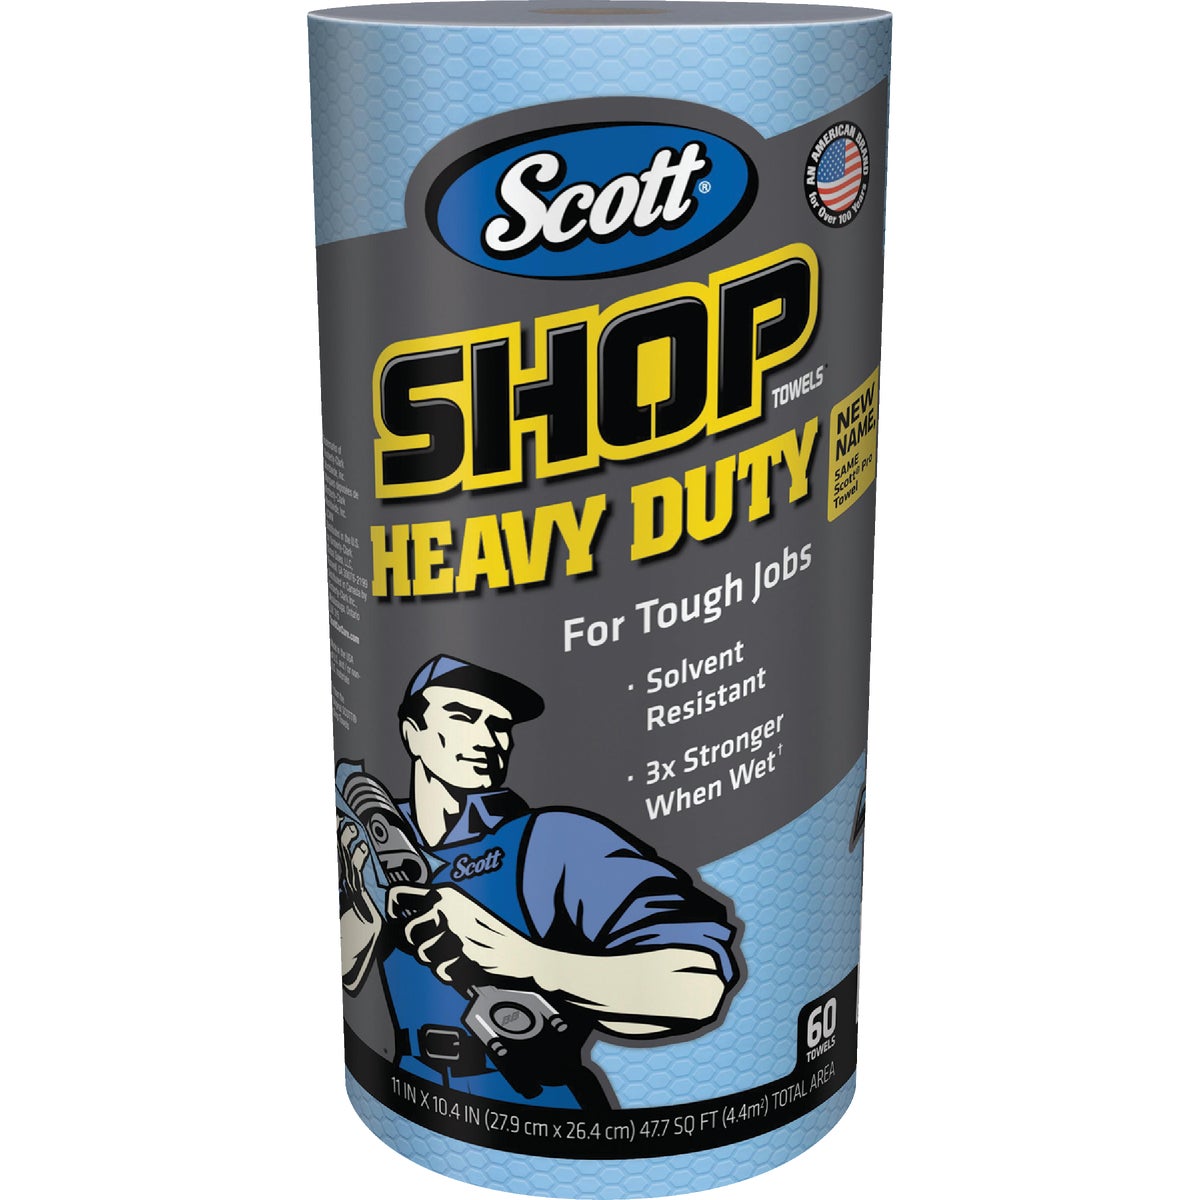 Scott Pro 11 In. W x 10.4 In. L Disposable Heavy-Duty Shop Towel (60-Count)